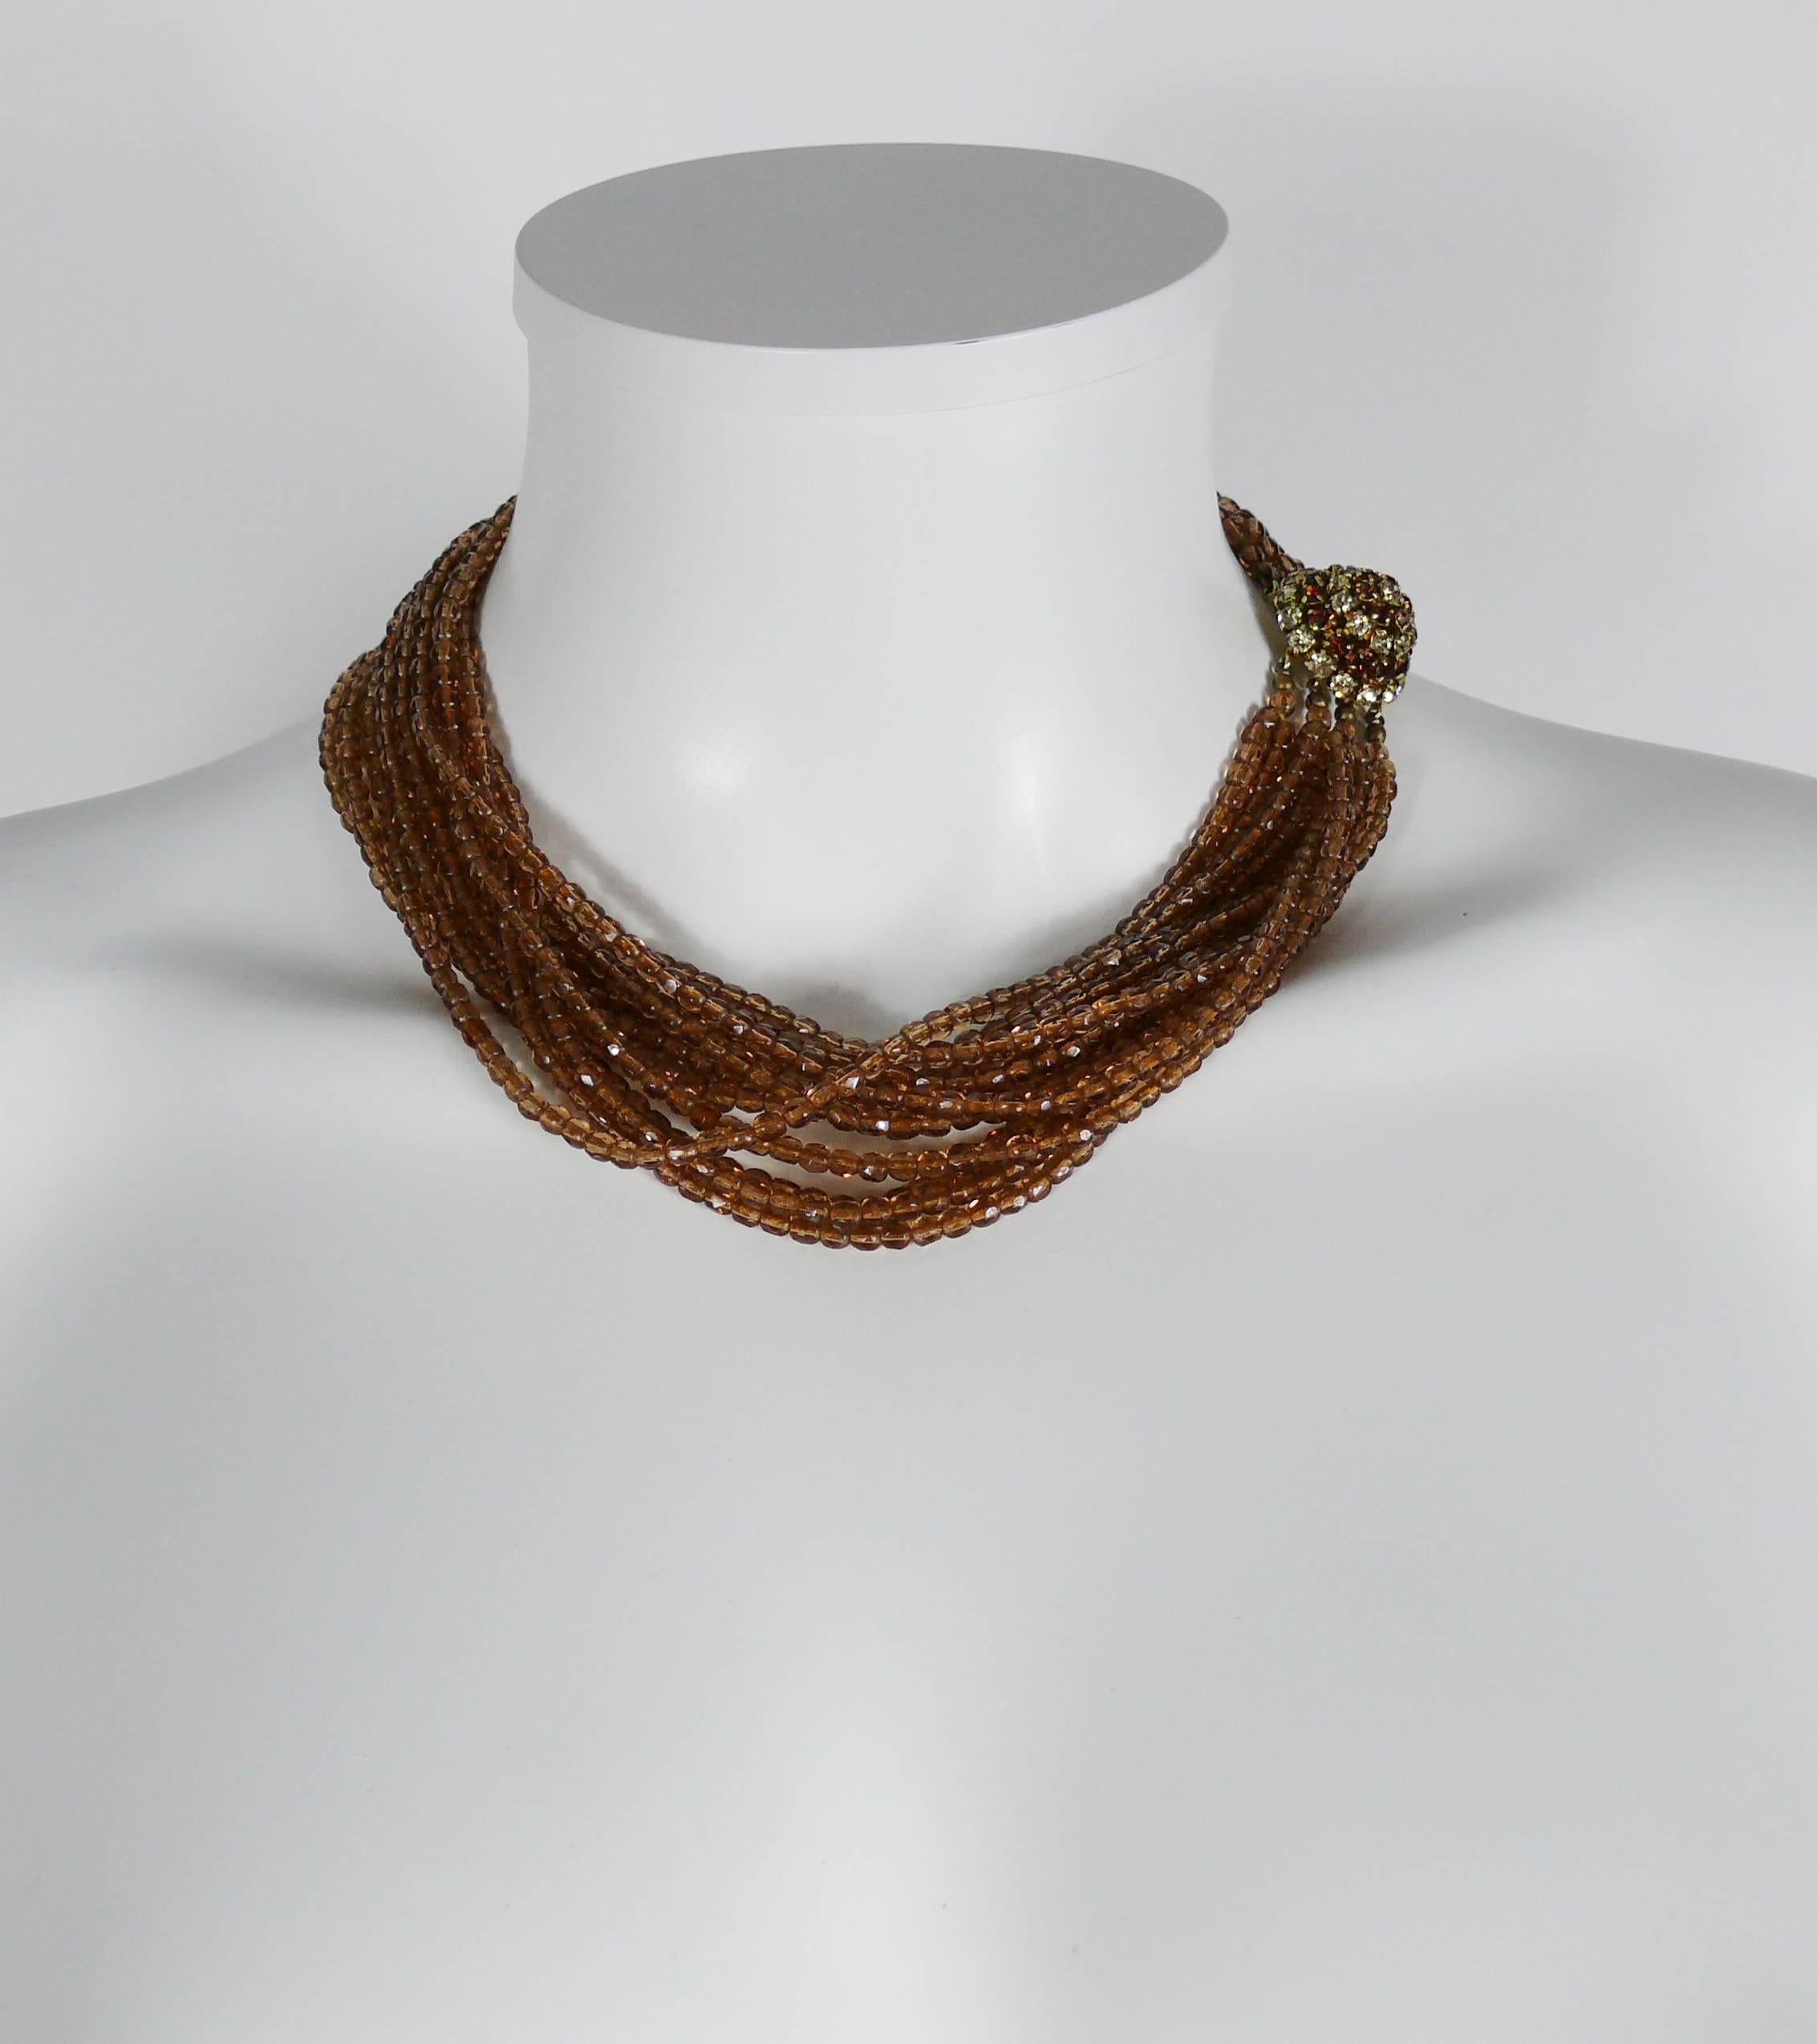 CHRISTIAN DIOR vintage 1964 collier de perles multibrins.

Ce collier comporte douze brins de perles de verre à facettes et un magnifique fermoir en strass pavé.

Marqué CHRISTIAN DIOR 1964 Made in Germany.

Mesures indicatives : longueur environ 43